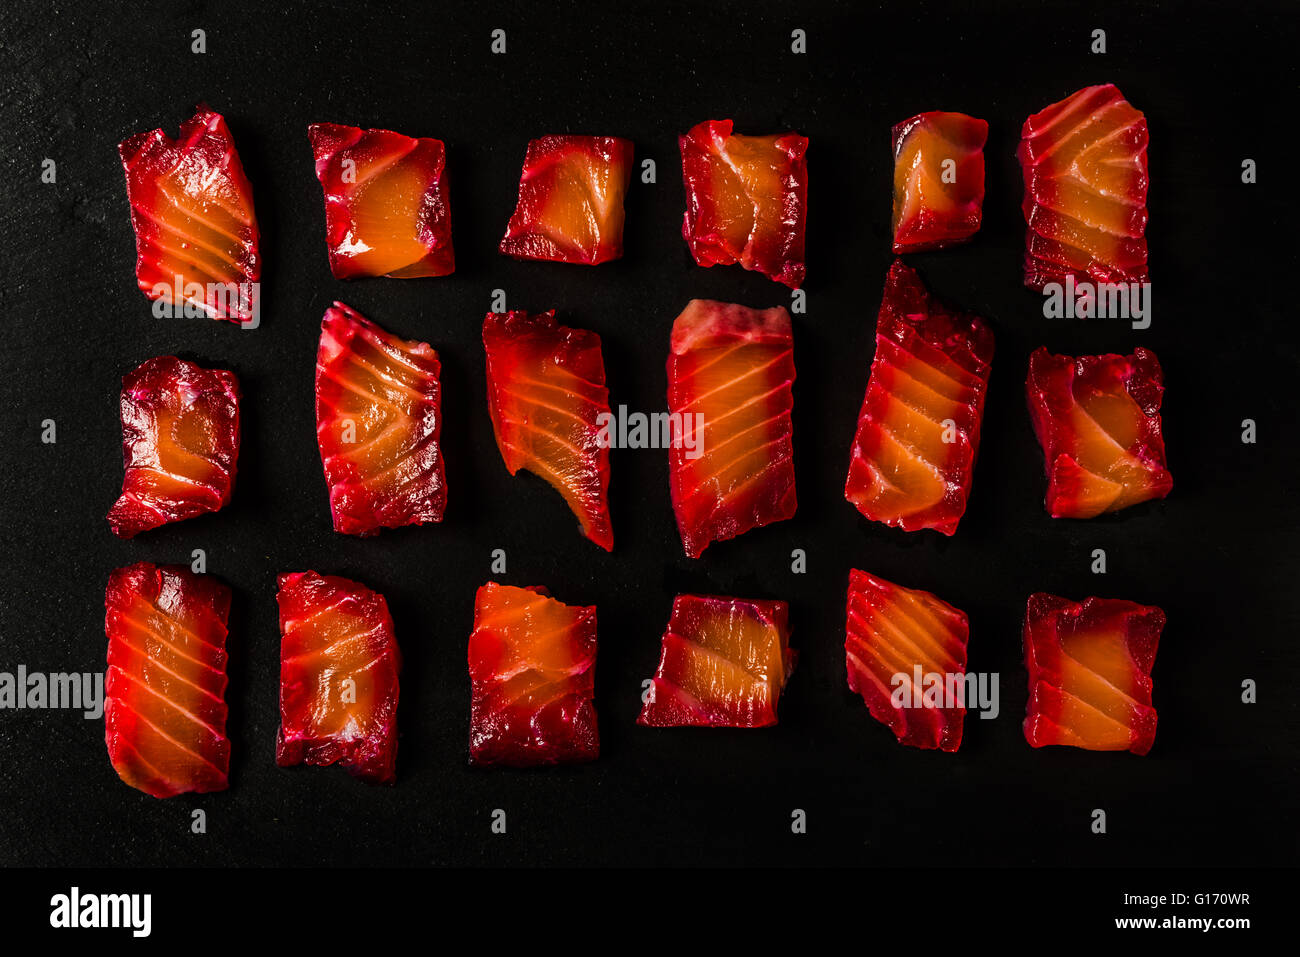 Rote Beete Gravalax - Lachs mit Salz, Pfeffer und rote Beete geheilt Stockfoto